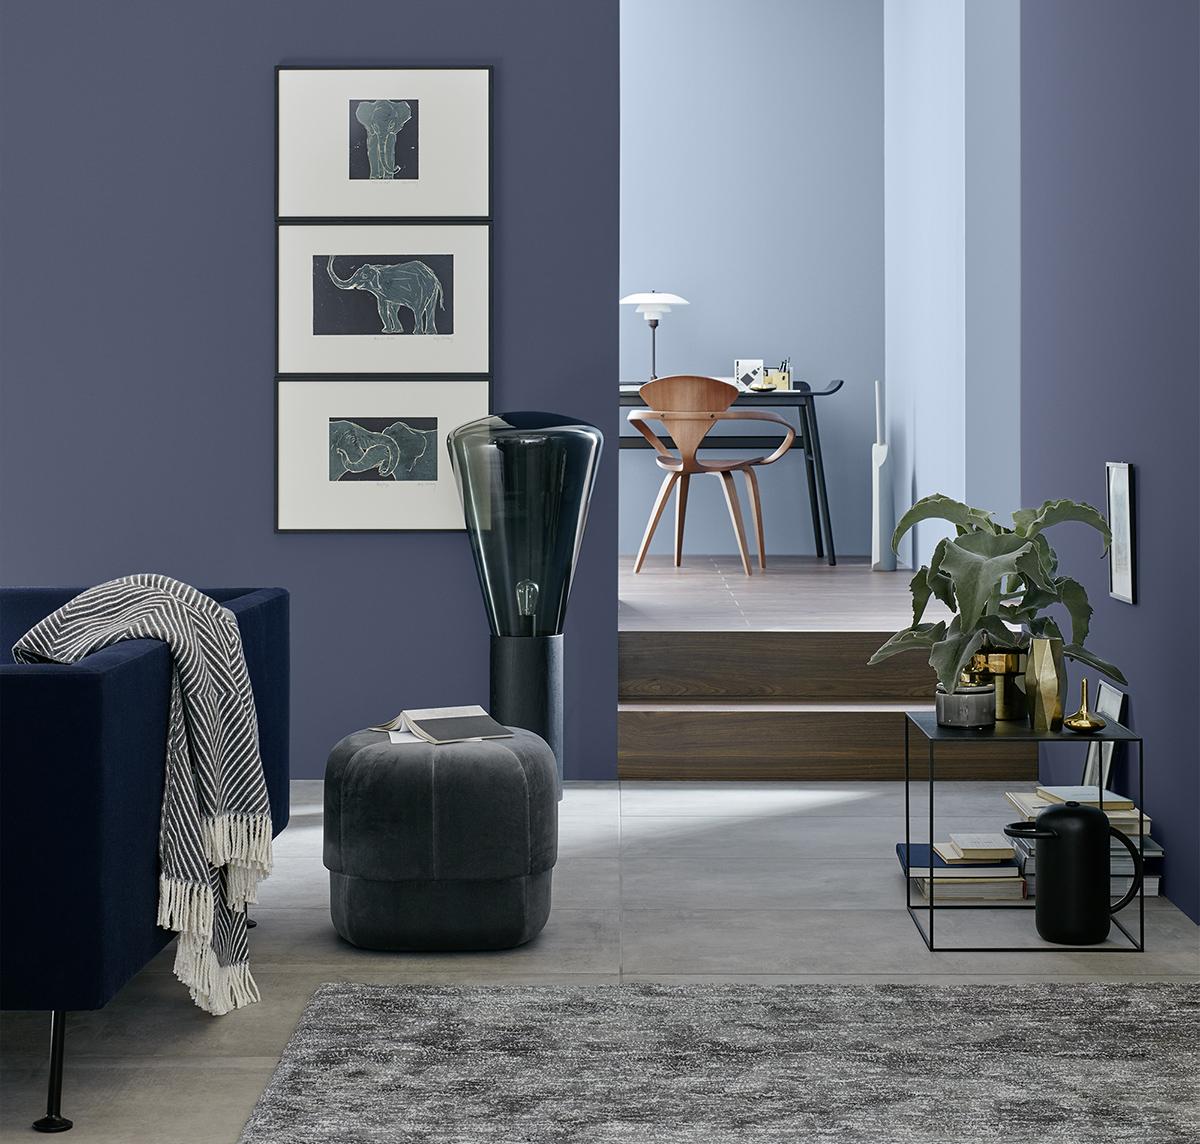 Belém, Architects' Finest #stuhl #hocker #wandfarbe #schreibtisch #sofa #hellblauewandfarbe #blauewandfarbe #schönerwohnenfarbeblau